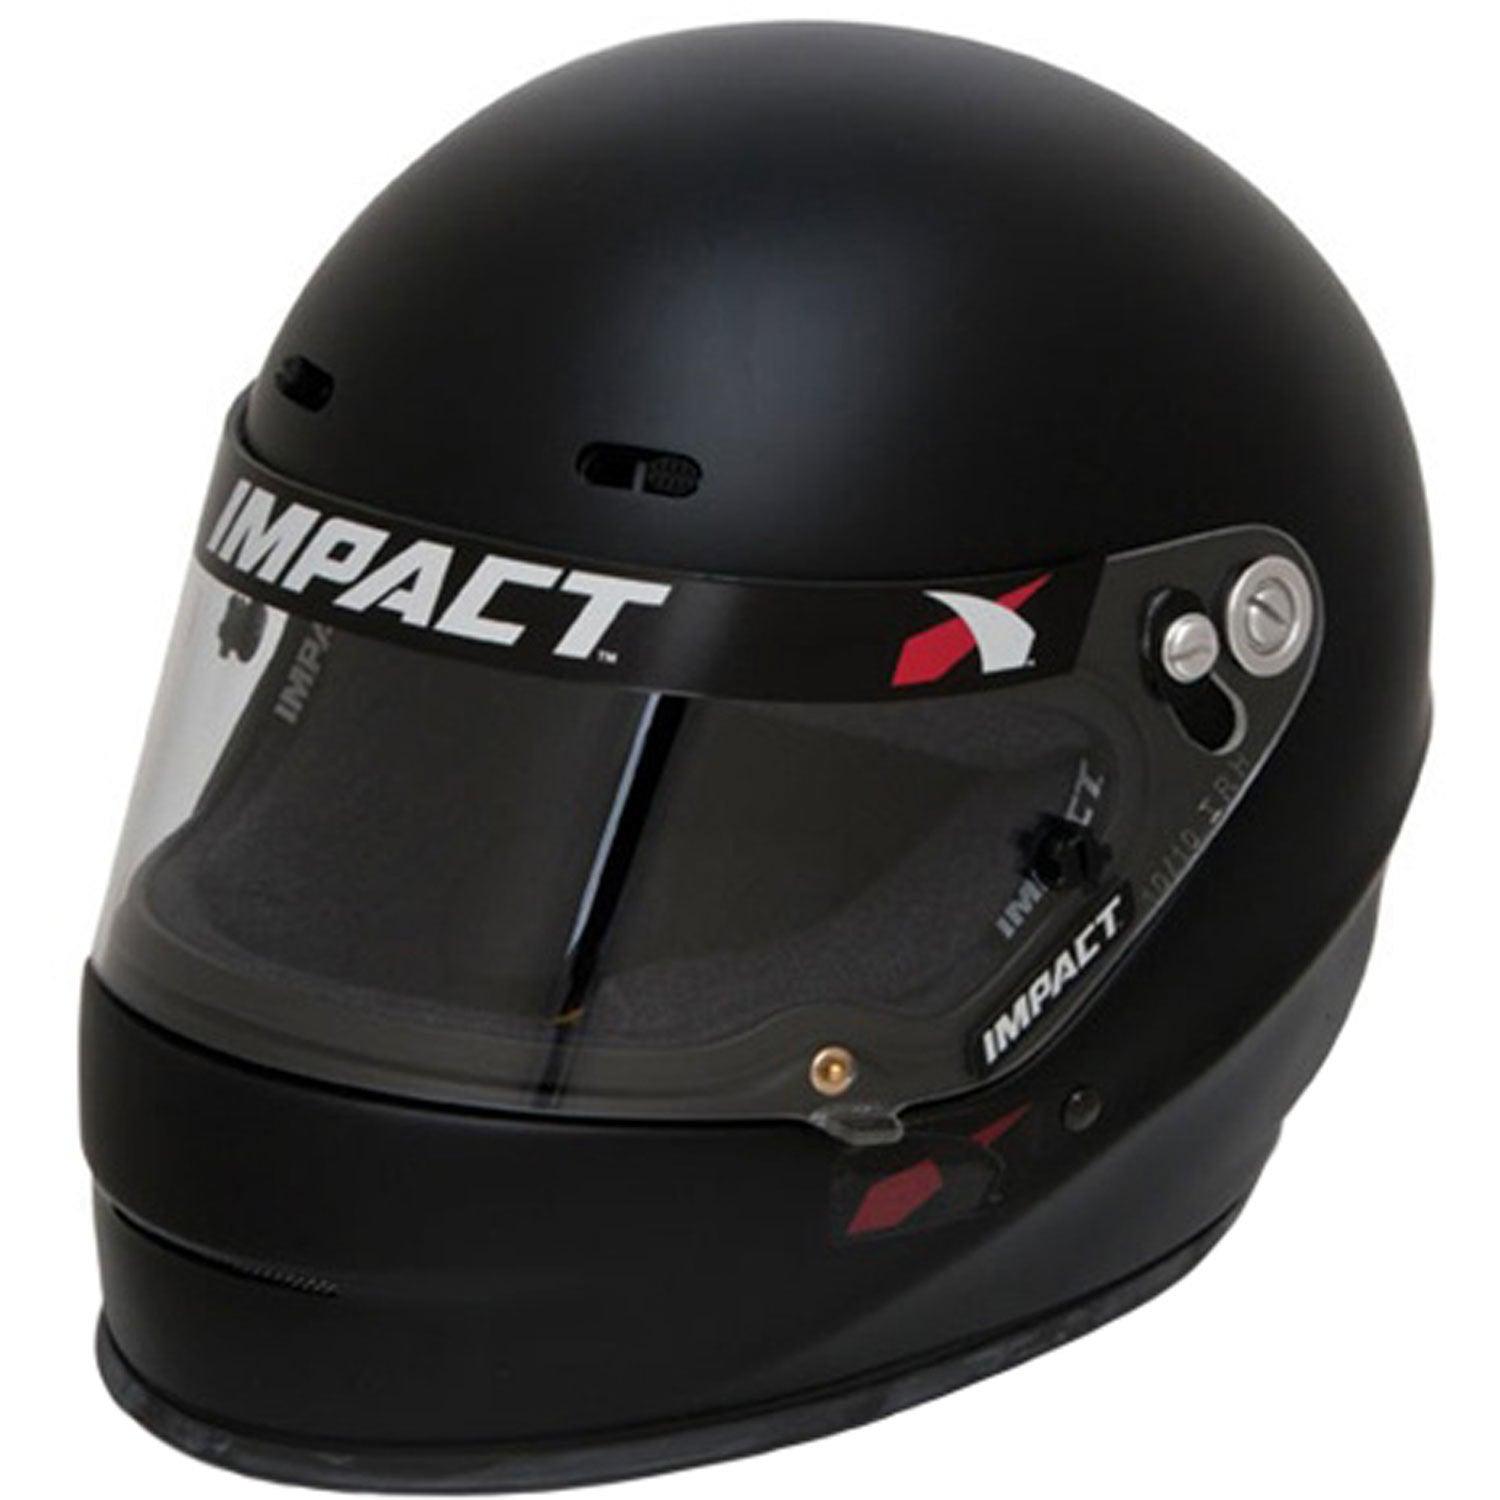 Helmet 1320 Large Flat Black SA2020 - Burlile Performance Products